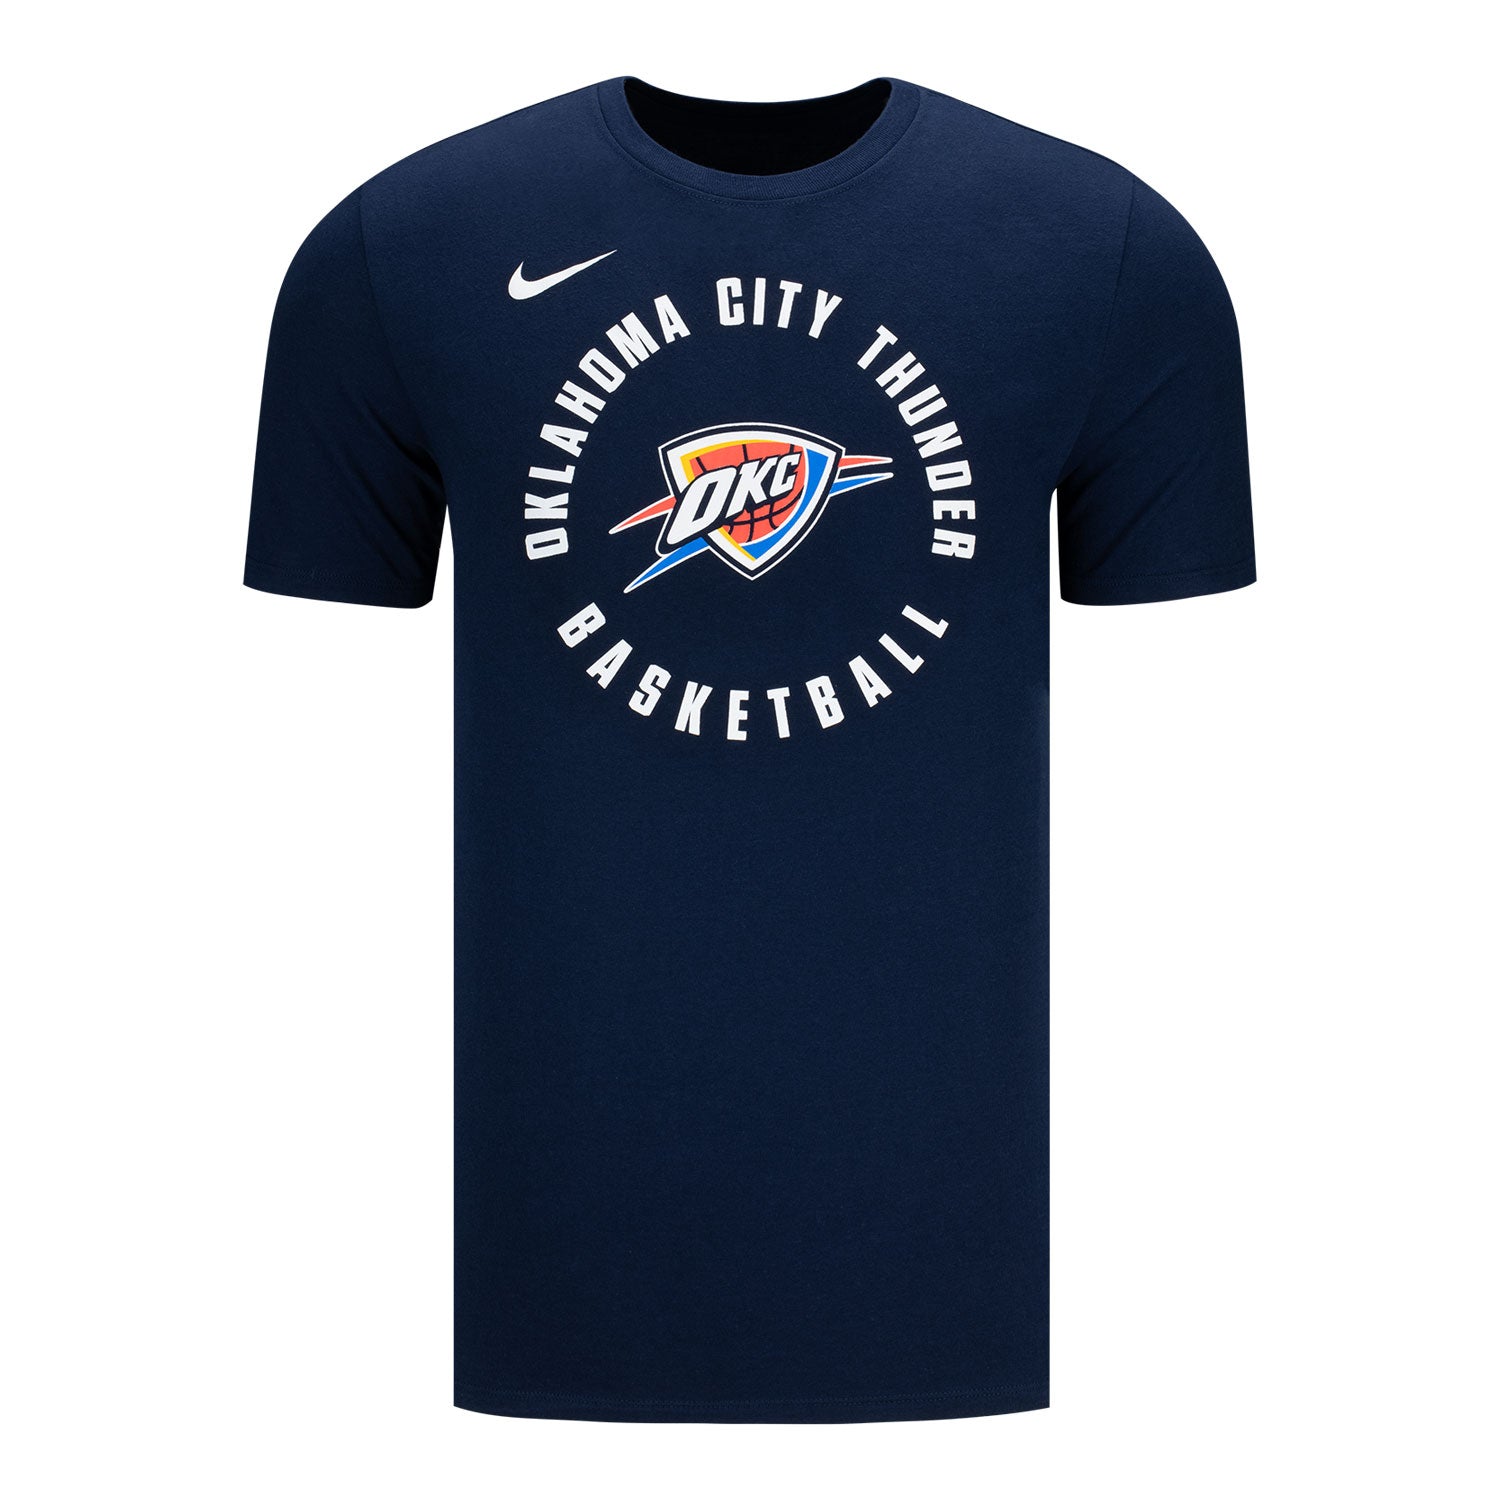 New Era Oklahoma City Thunder NBA Grey T-Shirt